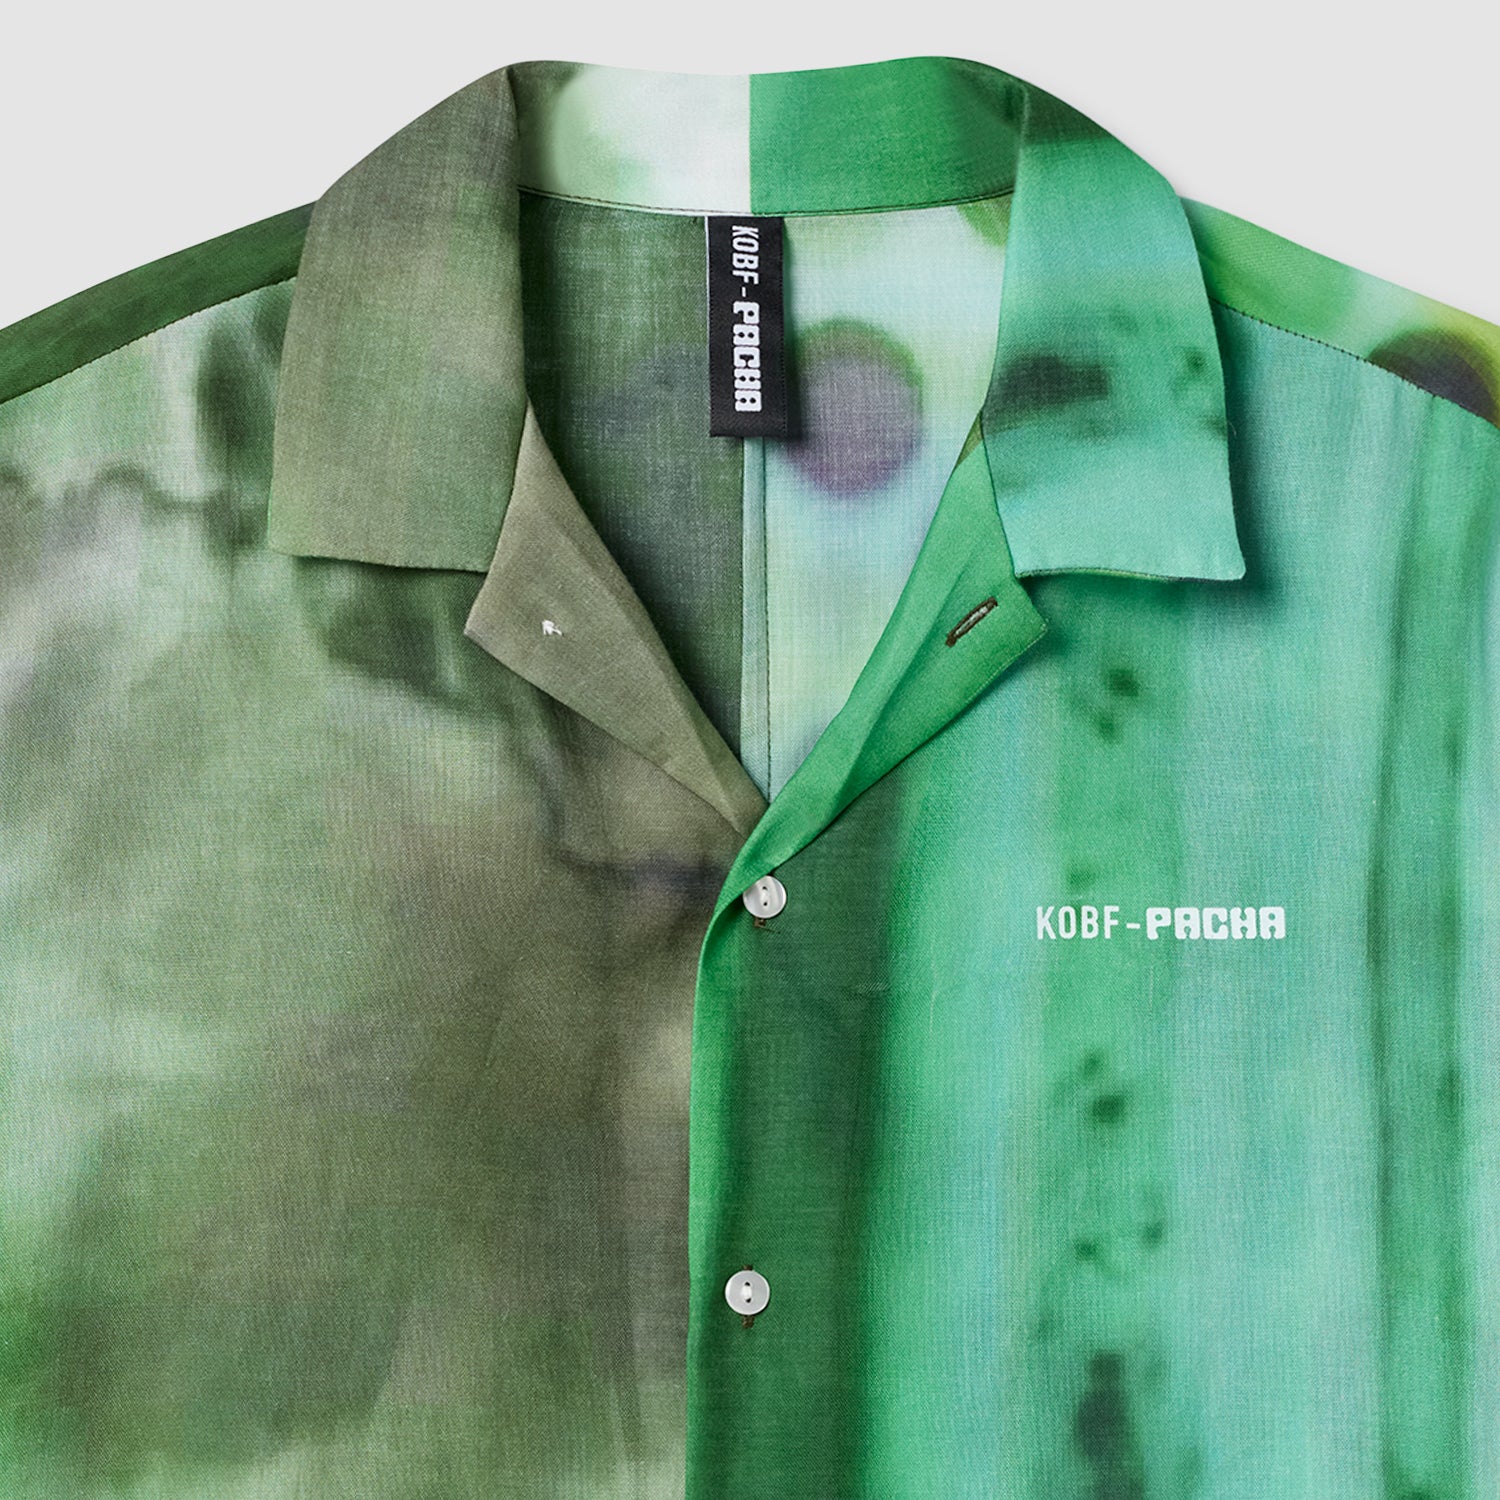 Pacha x KOBF - Camisa Unisex Verde